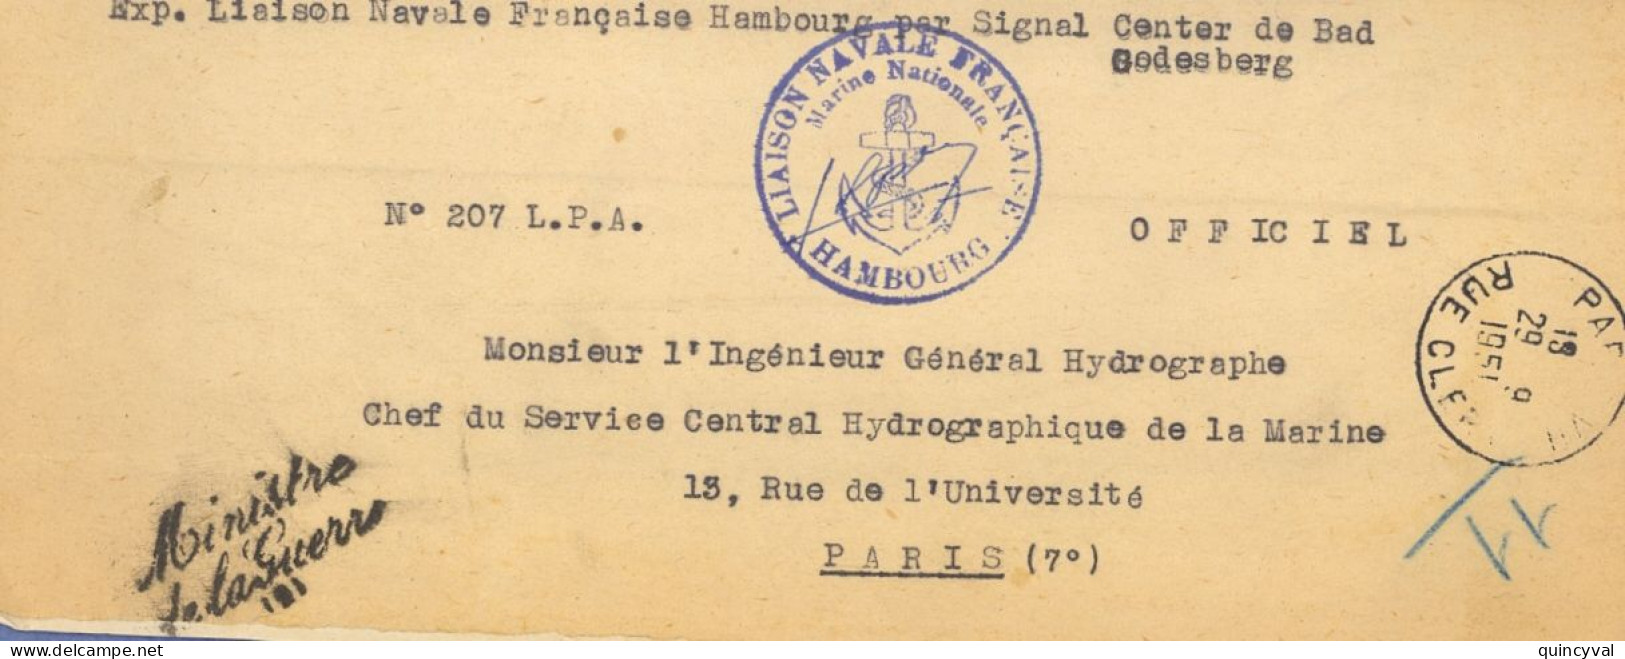 Liaison Navale Française Hambourg Signal Center  Bad Godesberg Griffe Ministre De La Guerre 1951 Paris Clery Ancre - Poste Navale